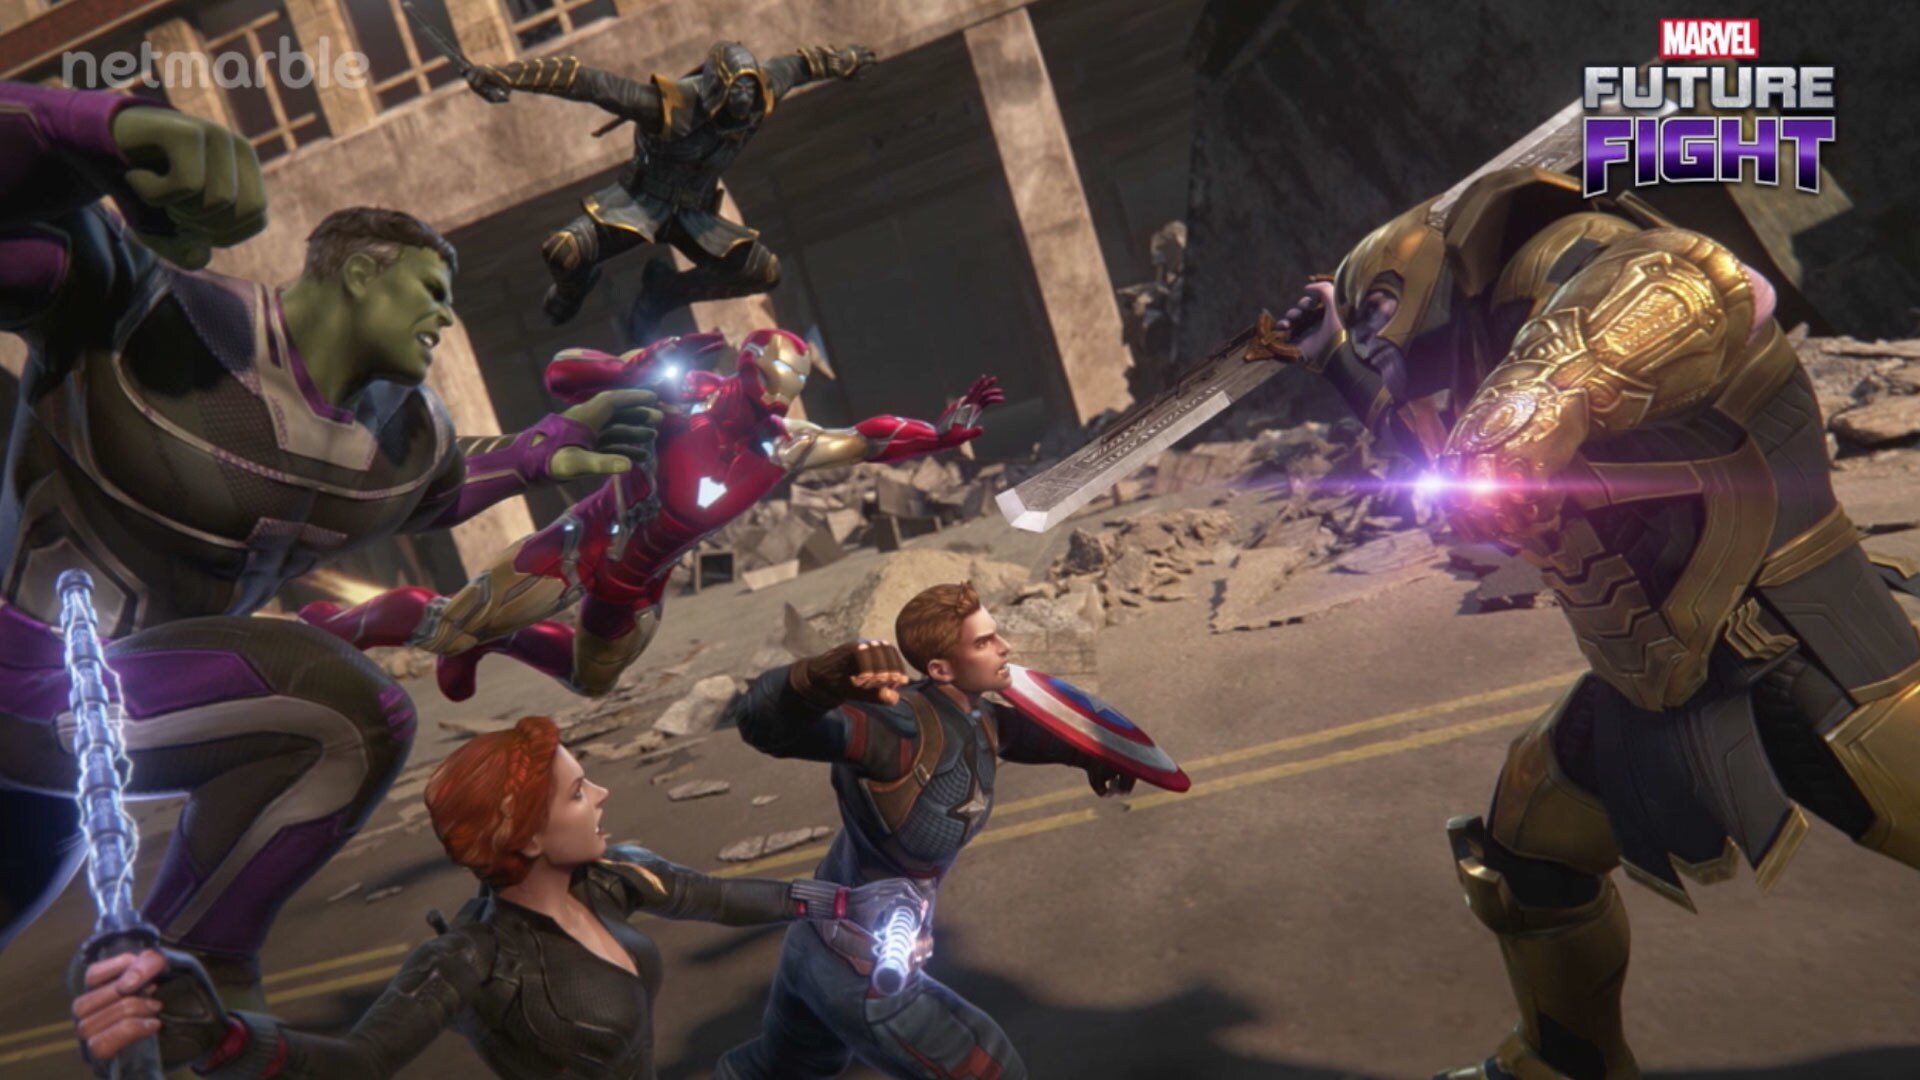 Marvel Future Fight: Marvel’s “Avengers: Endgame” Characters